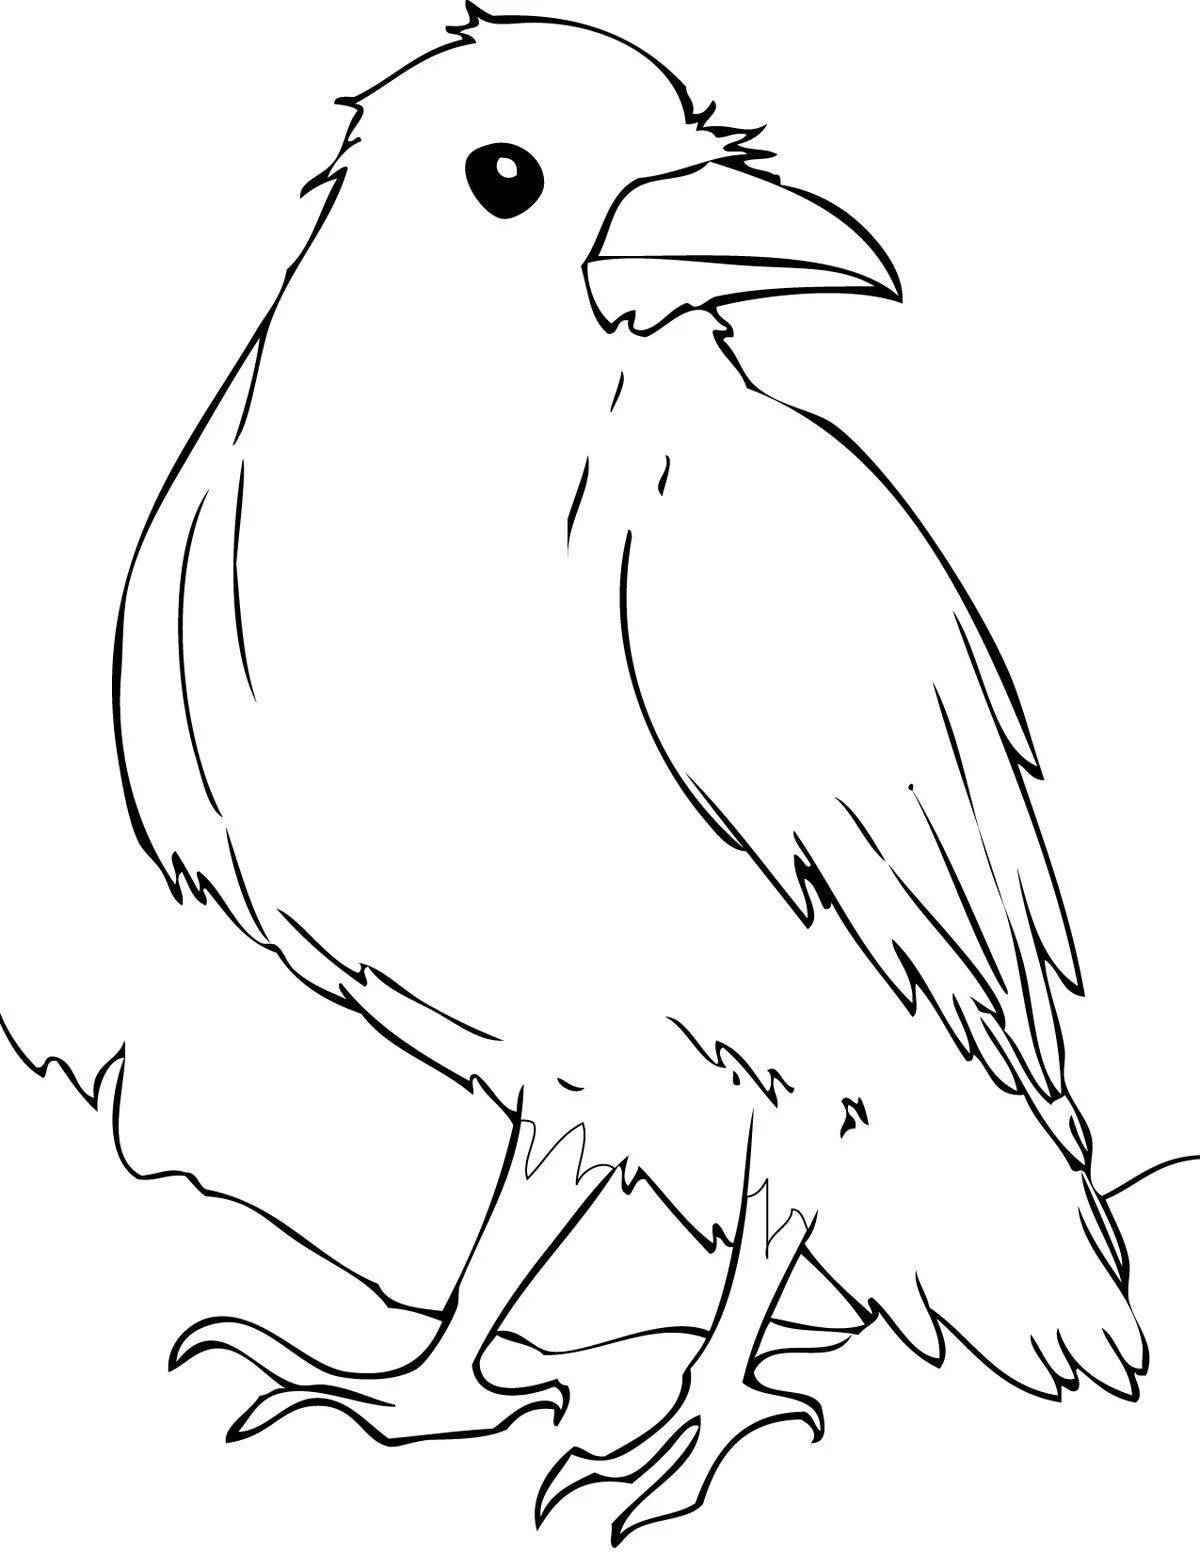 Раскраска художественная ворона